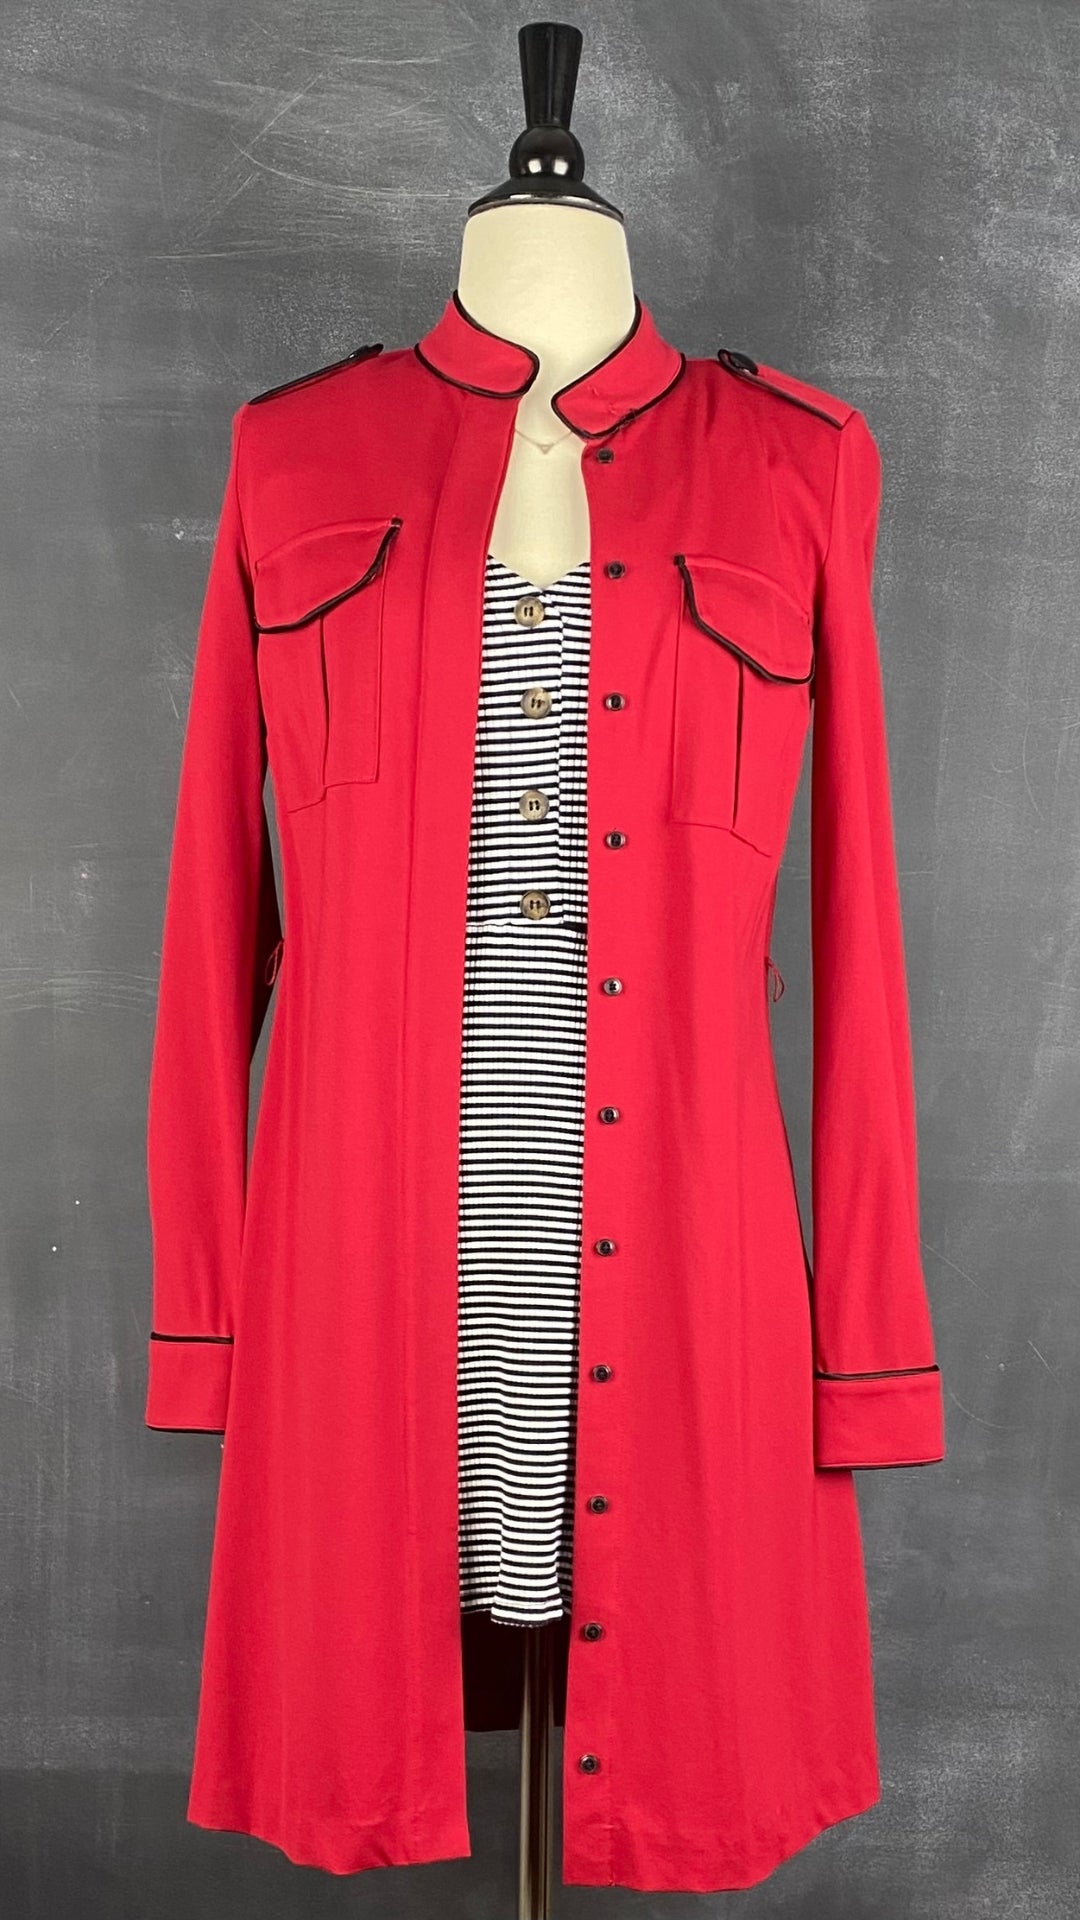 Robe rayée extensible Reformation, taille xs-s. Vue de l'agencement avec la robe chemisier rouge Tristan.